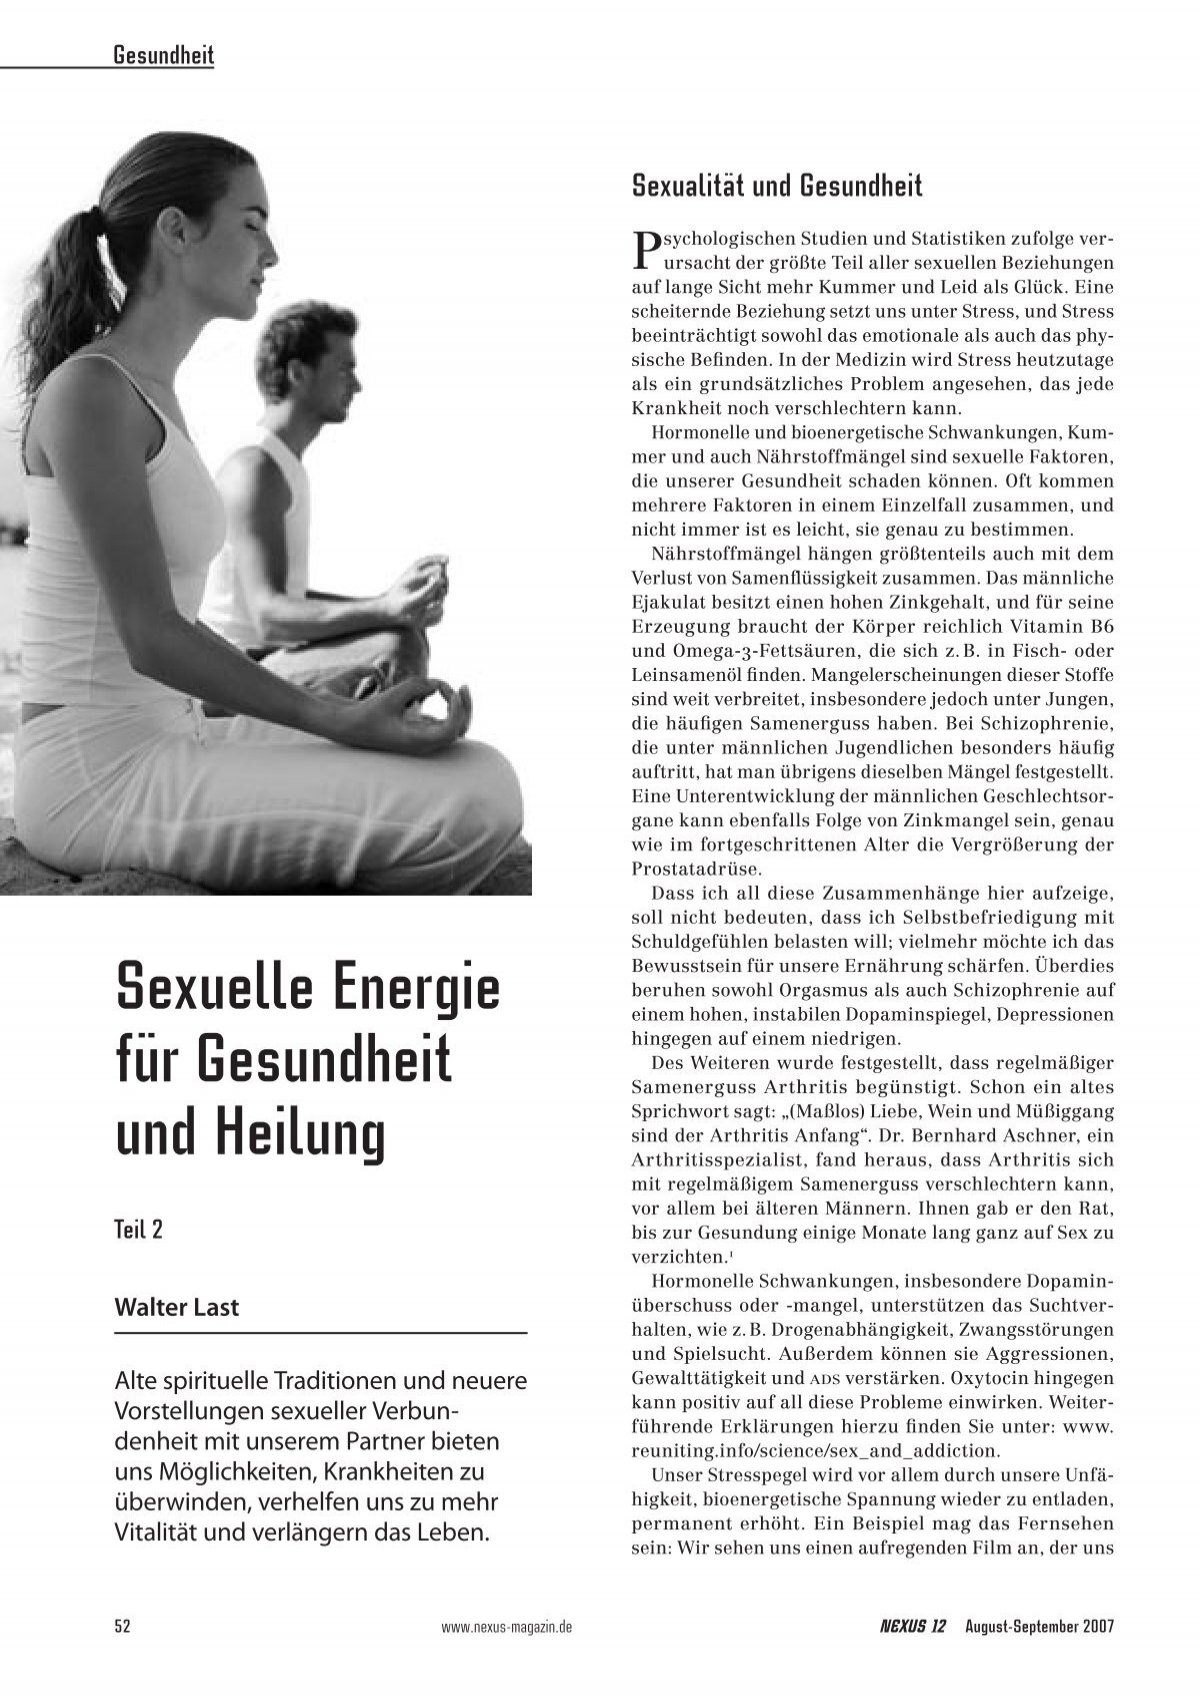 Sexuelle Energie Teil 2 Health Science Spirit